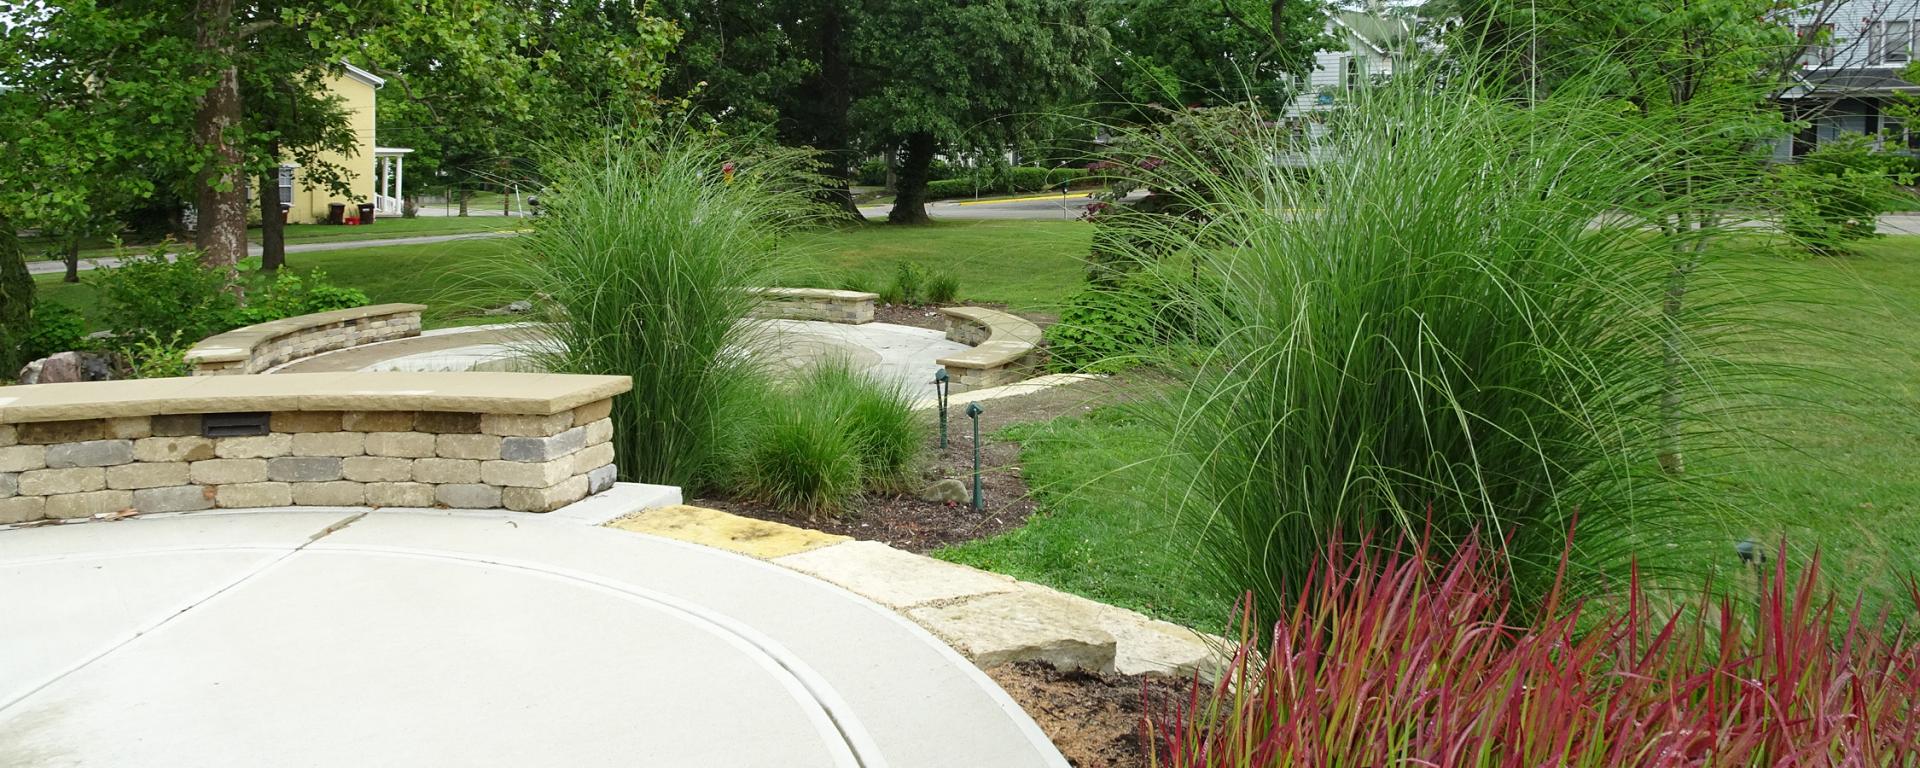 circular concrete areas in a park